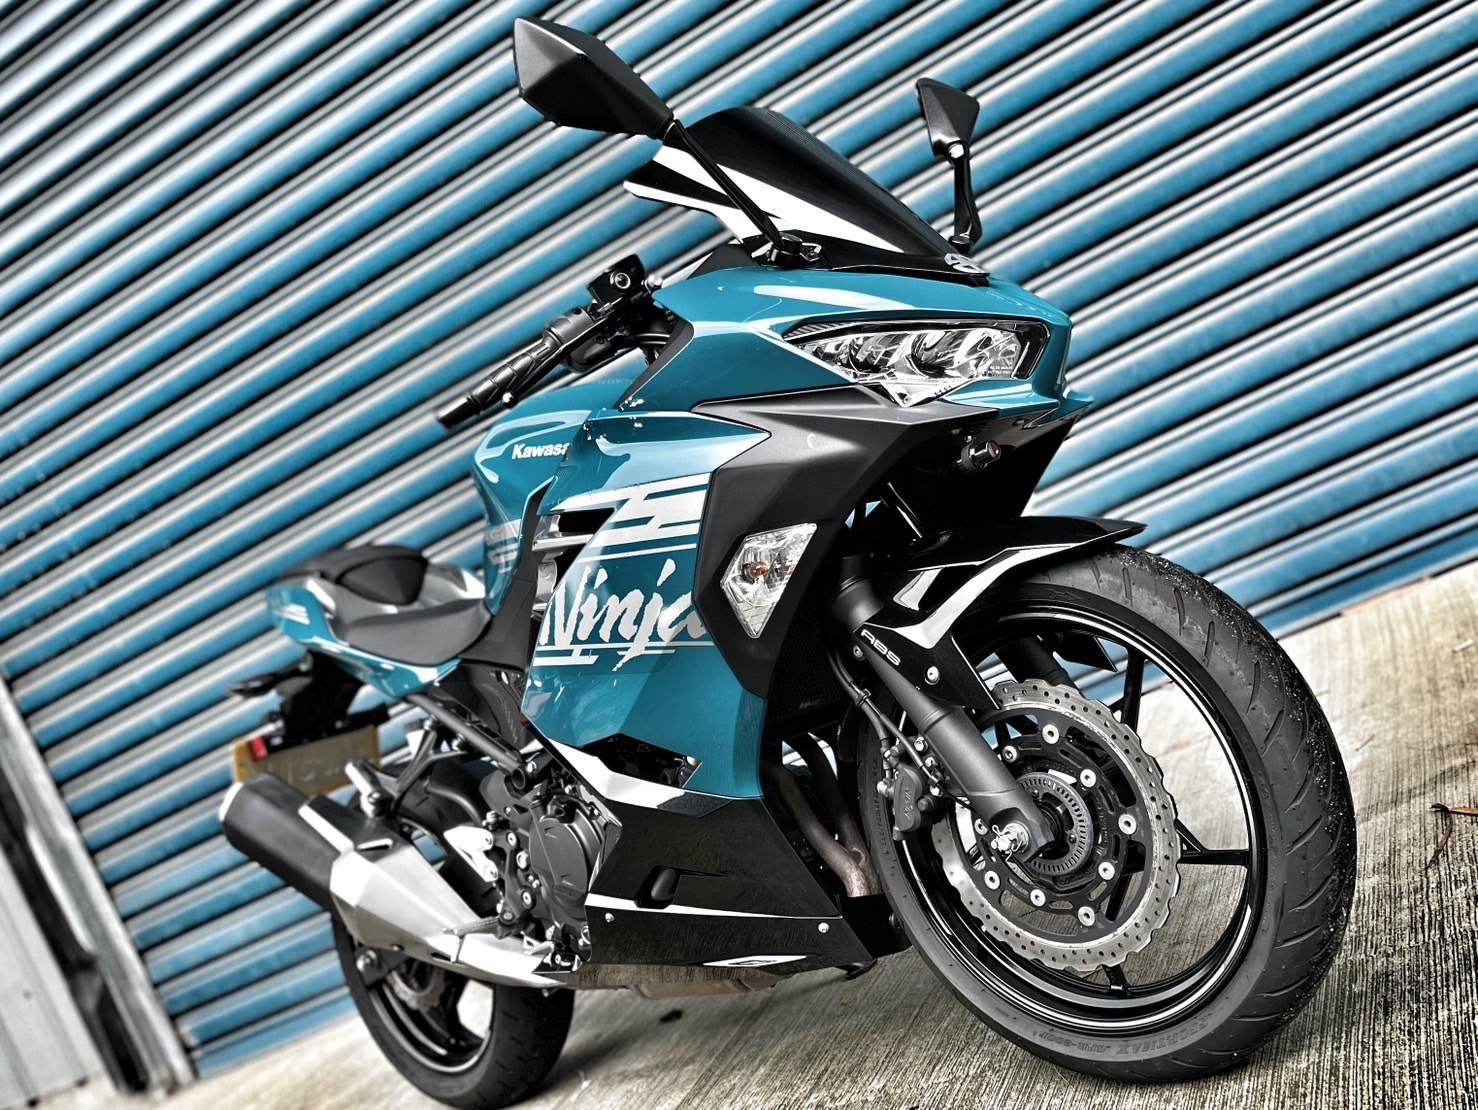 【小資族二手重機買賣】KAWASAKI NINJA400 - 「Webike-摩托車市」 原廠保固 無摔無事故 里程保証 小資族二手重機買賣